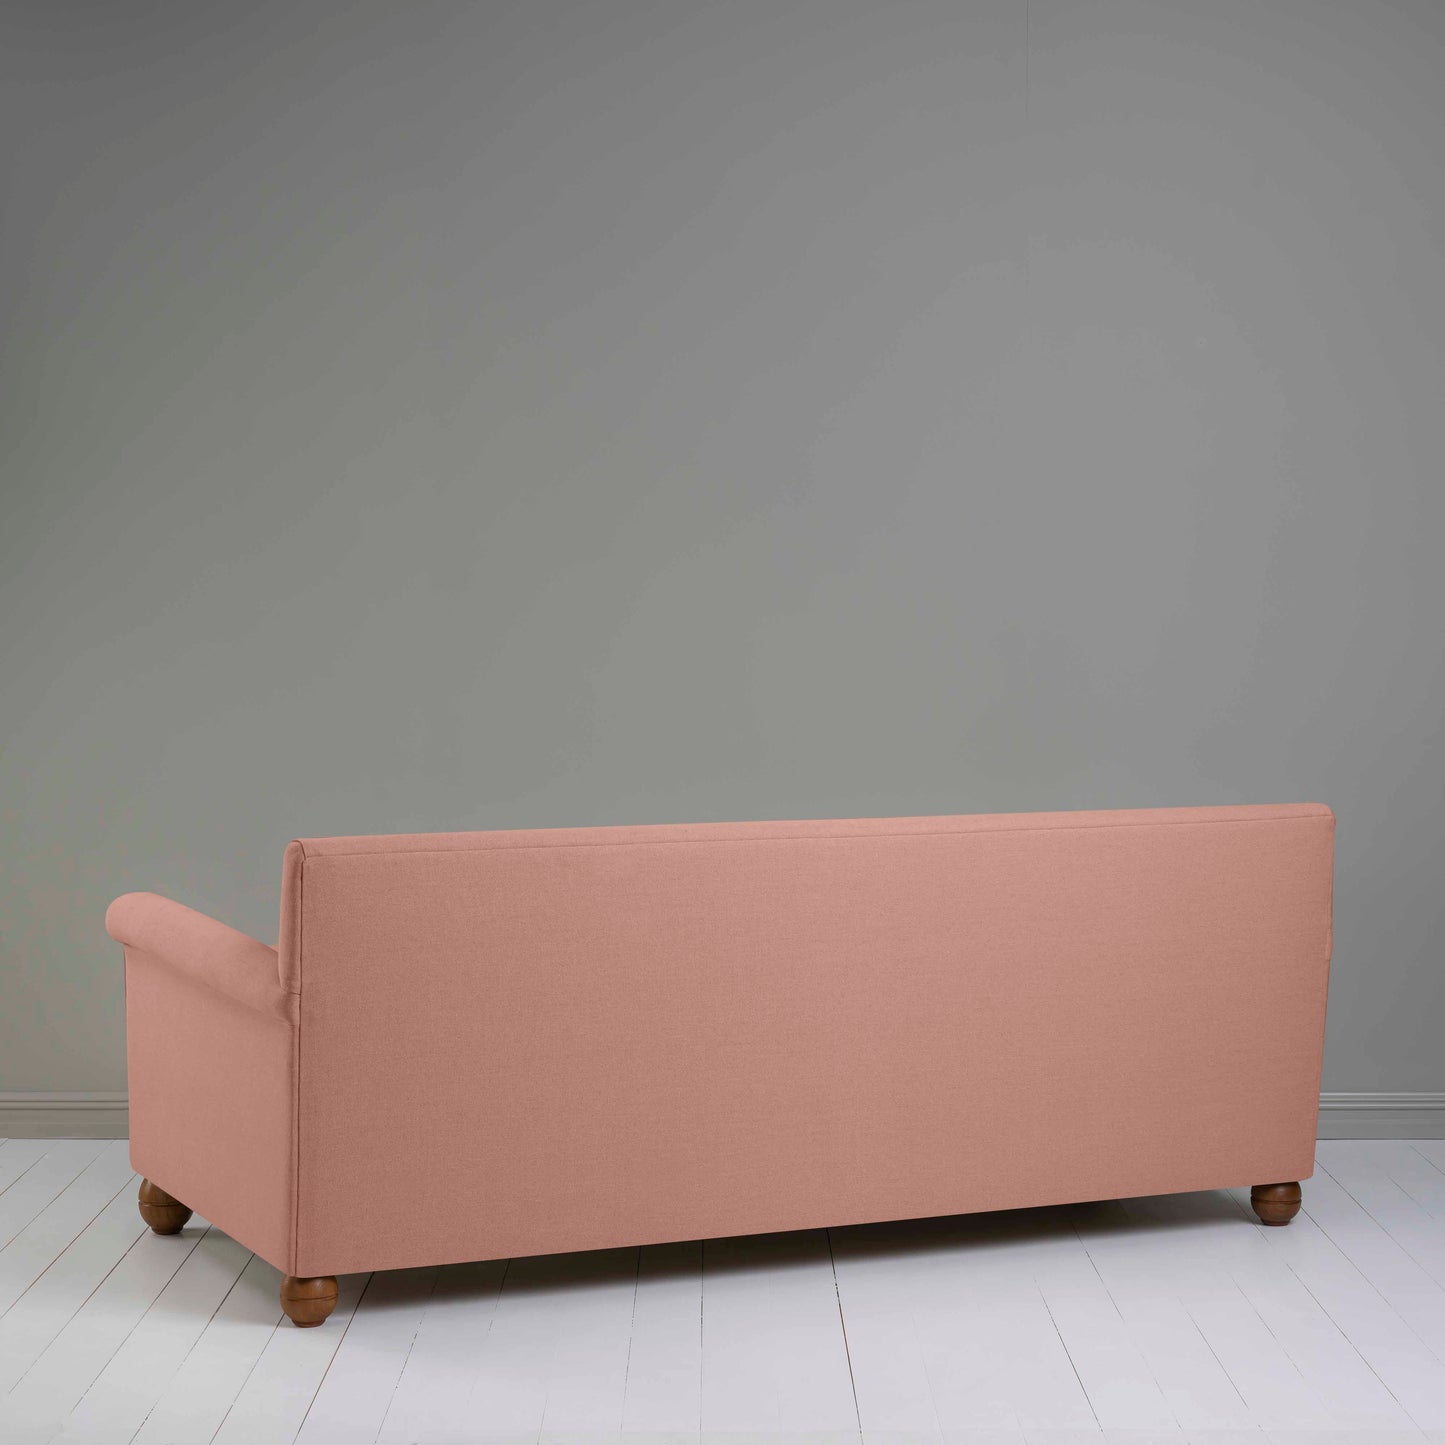 Idler 4 seater sofa in Laidback Linen Roseberry